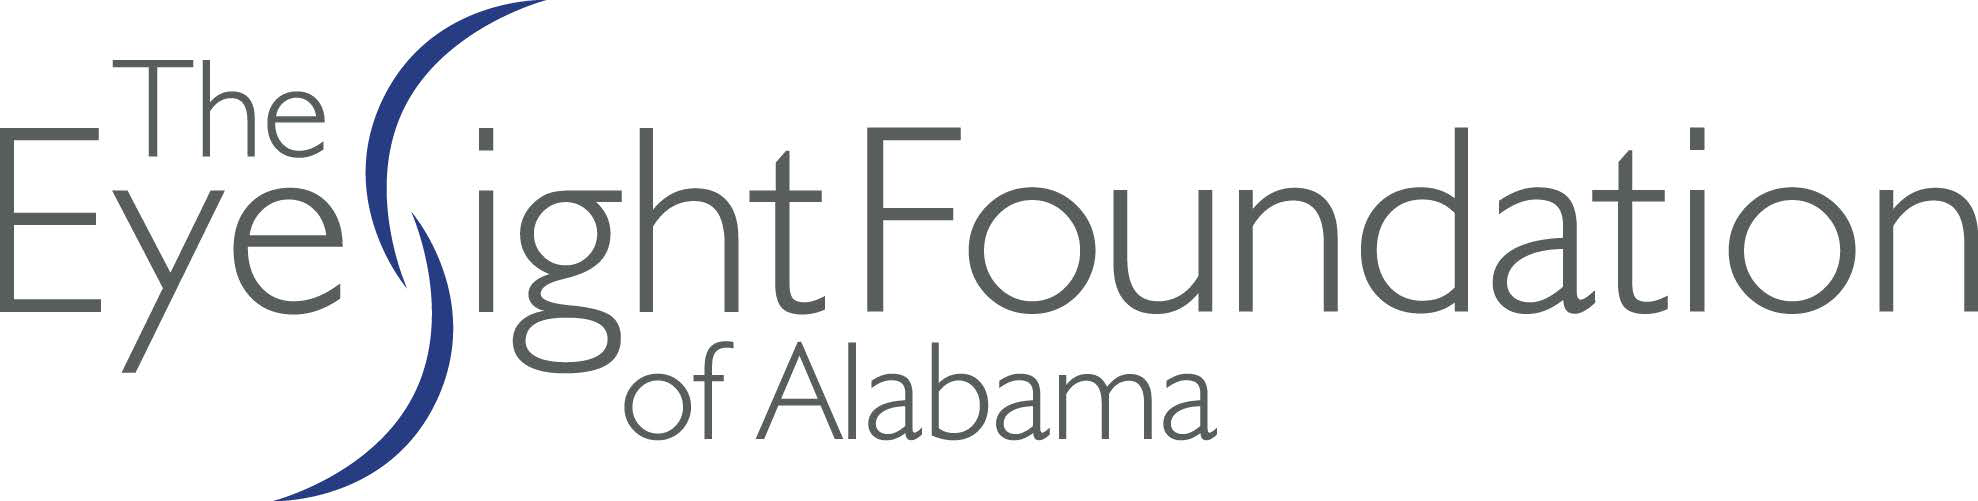 The Eye Sight Foundation of Alabama logo